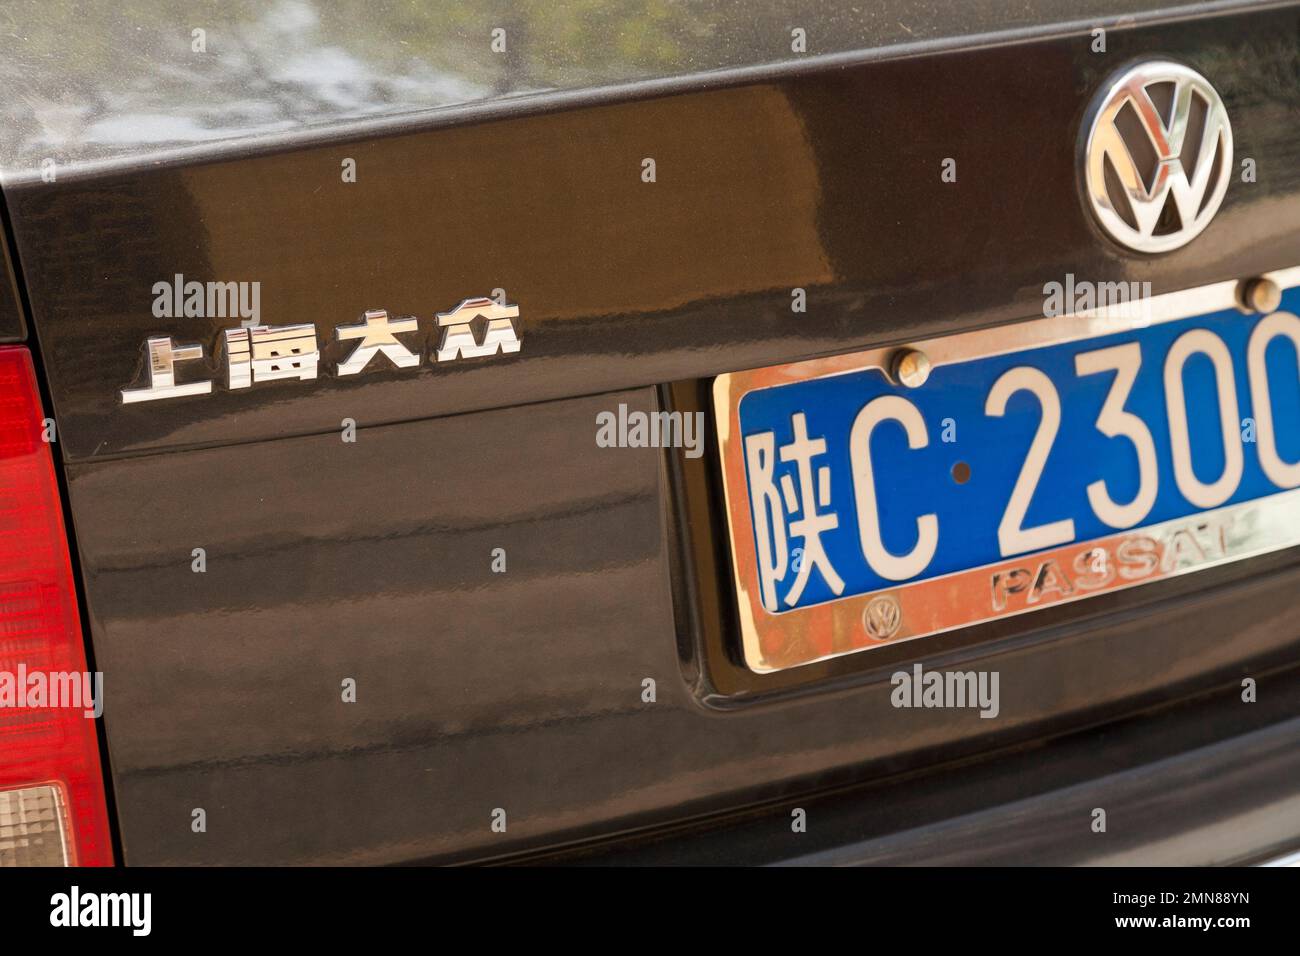 Posteriore con targa e modello scritto in caratteri cinesi / scritta VW Volkswagen auto / veicolo in Cina. Xian, Cina. (125) Foto Stock